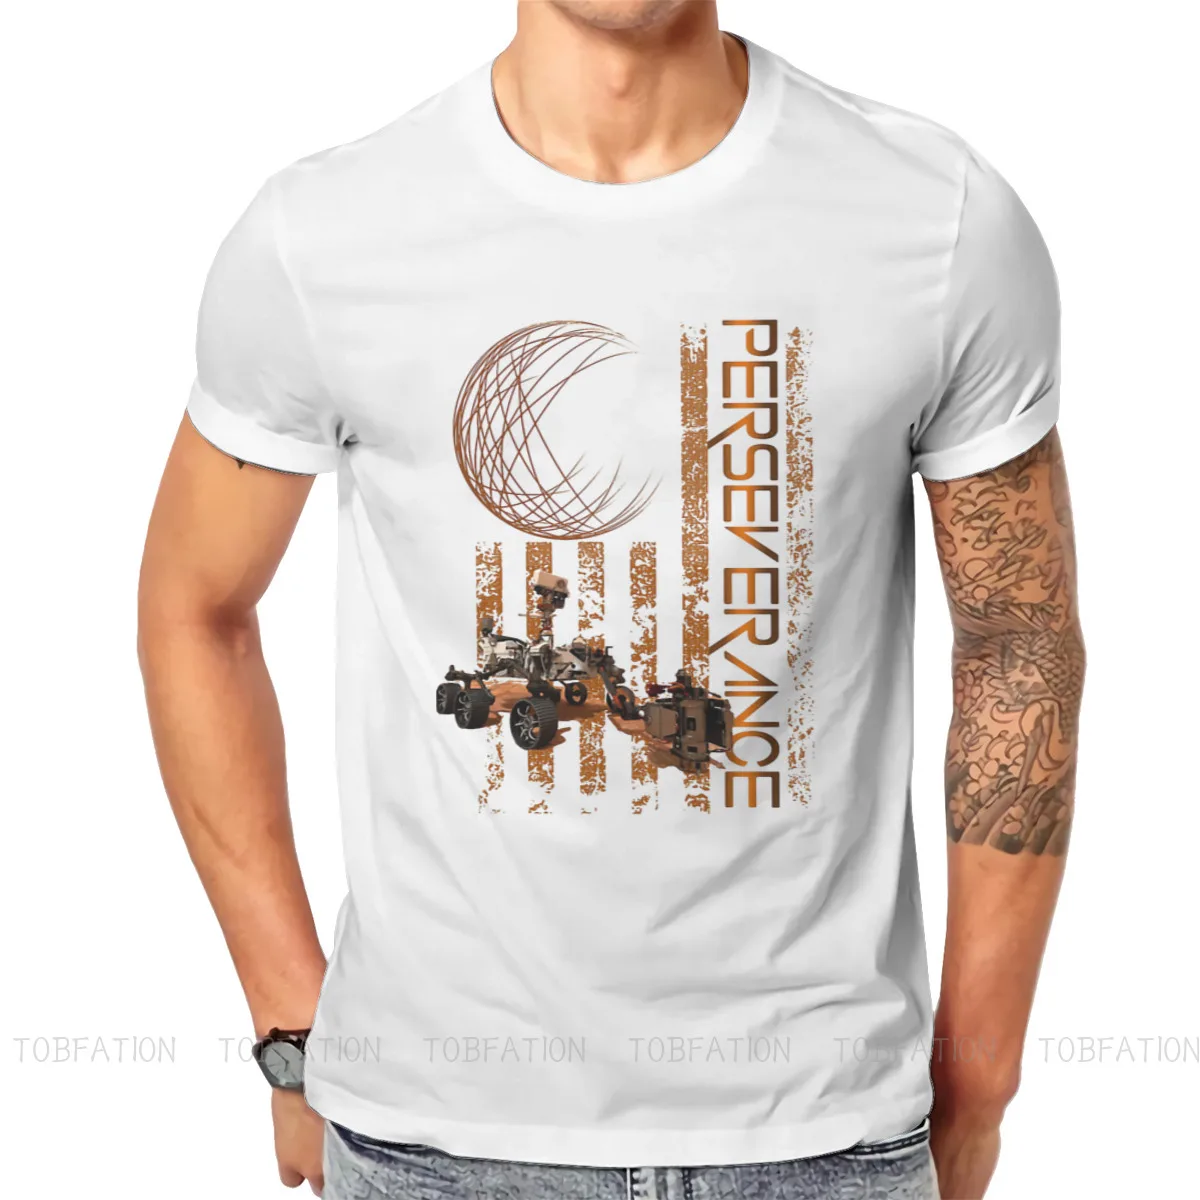 USA Flag Hip Hop TShirt Mars 2020 Perseverance Rover Exploration Creative Tops Casual T Shirt Men Tee Unique Gift Clothes